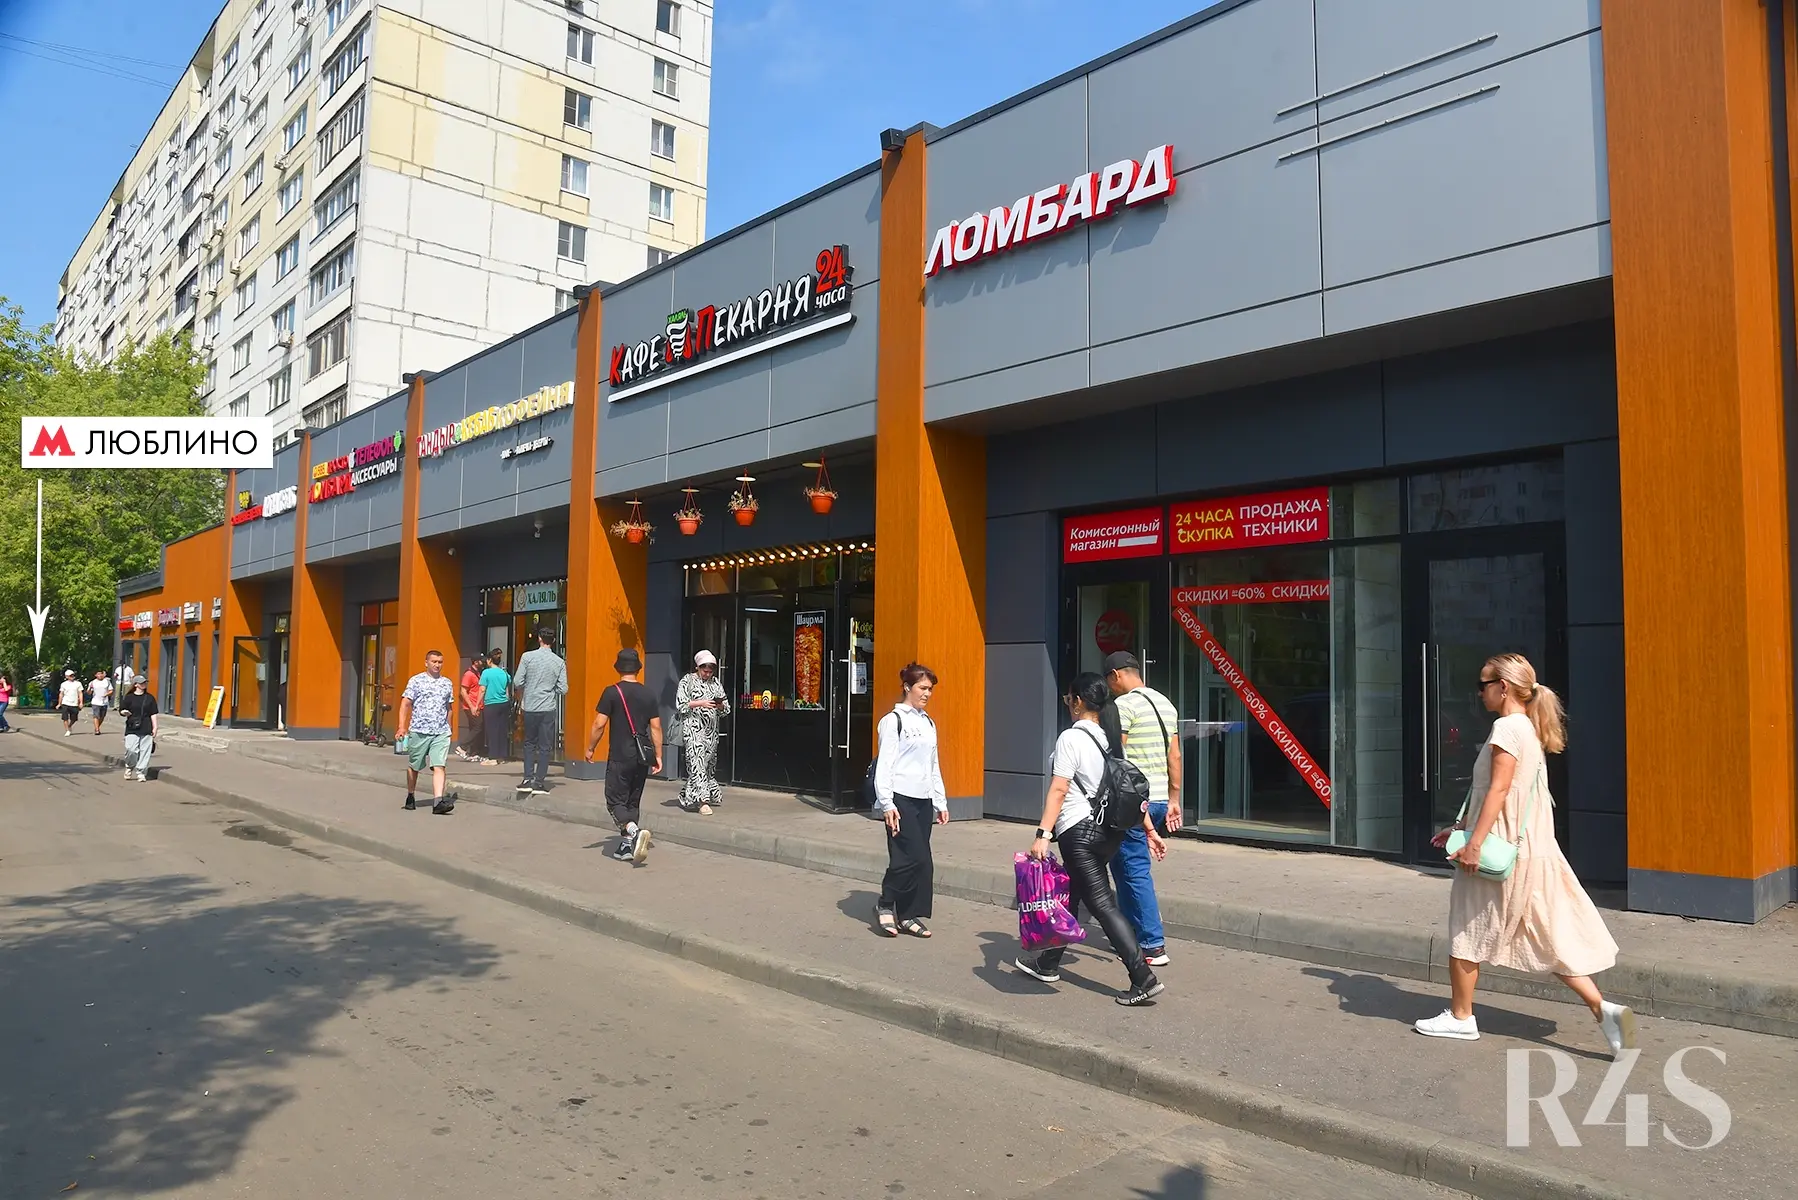 Аренда торговых помещений площадью 187.9 - 739.9 м2 в Москве:  Краснодарская, 57к3 R4S | Realty4Sale